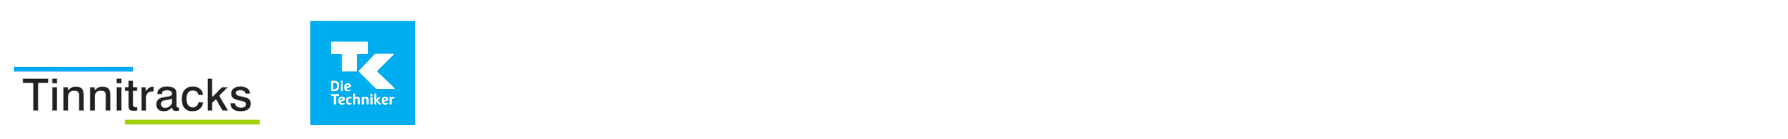 MindDoc Logo